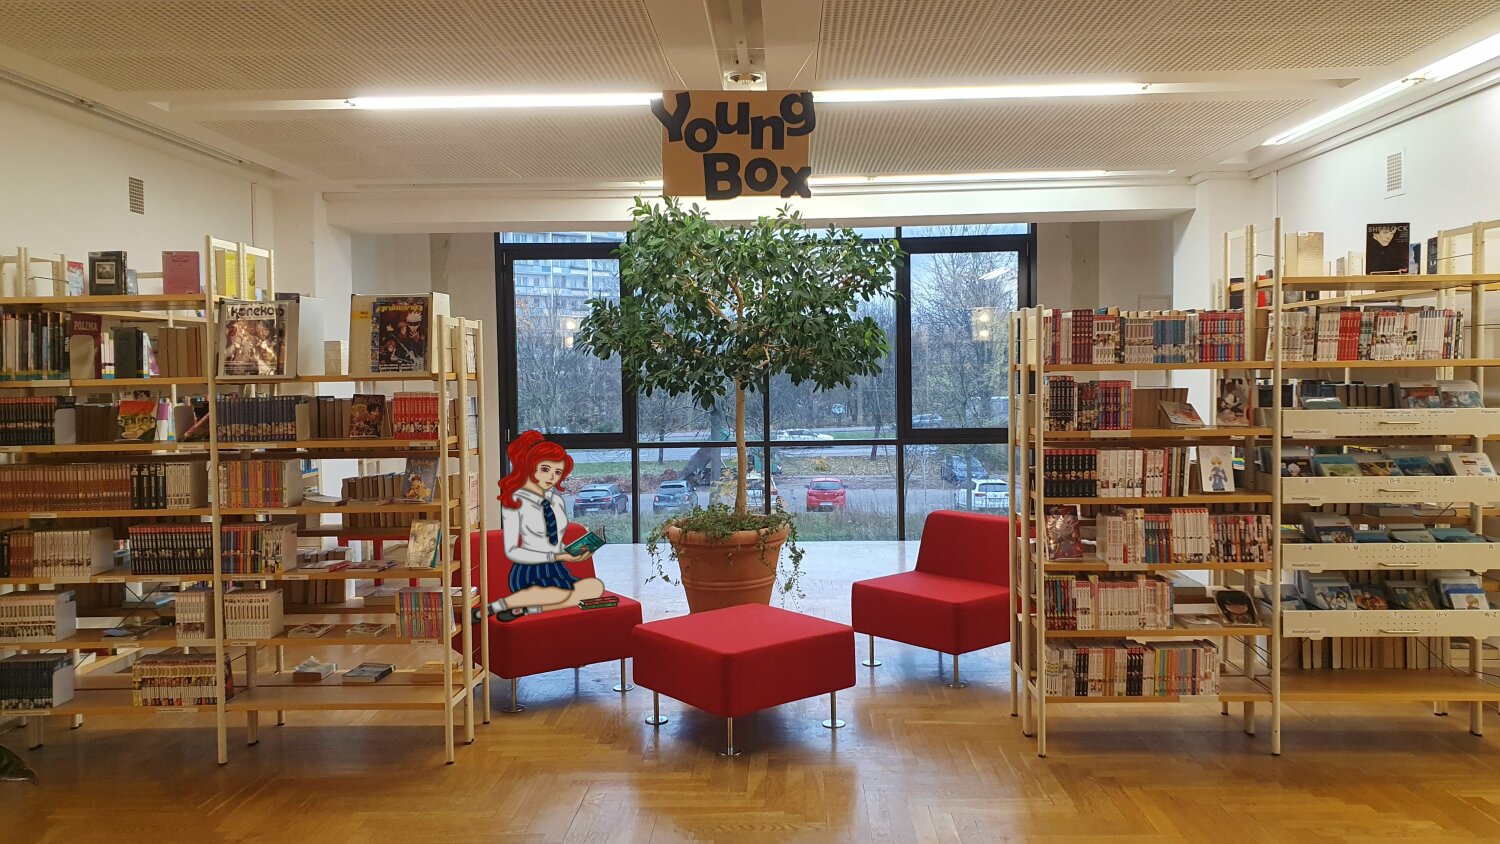 Jugendbereich der Bibliothek mit roten Sitzgelegenheiten